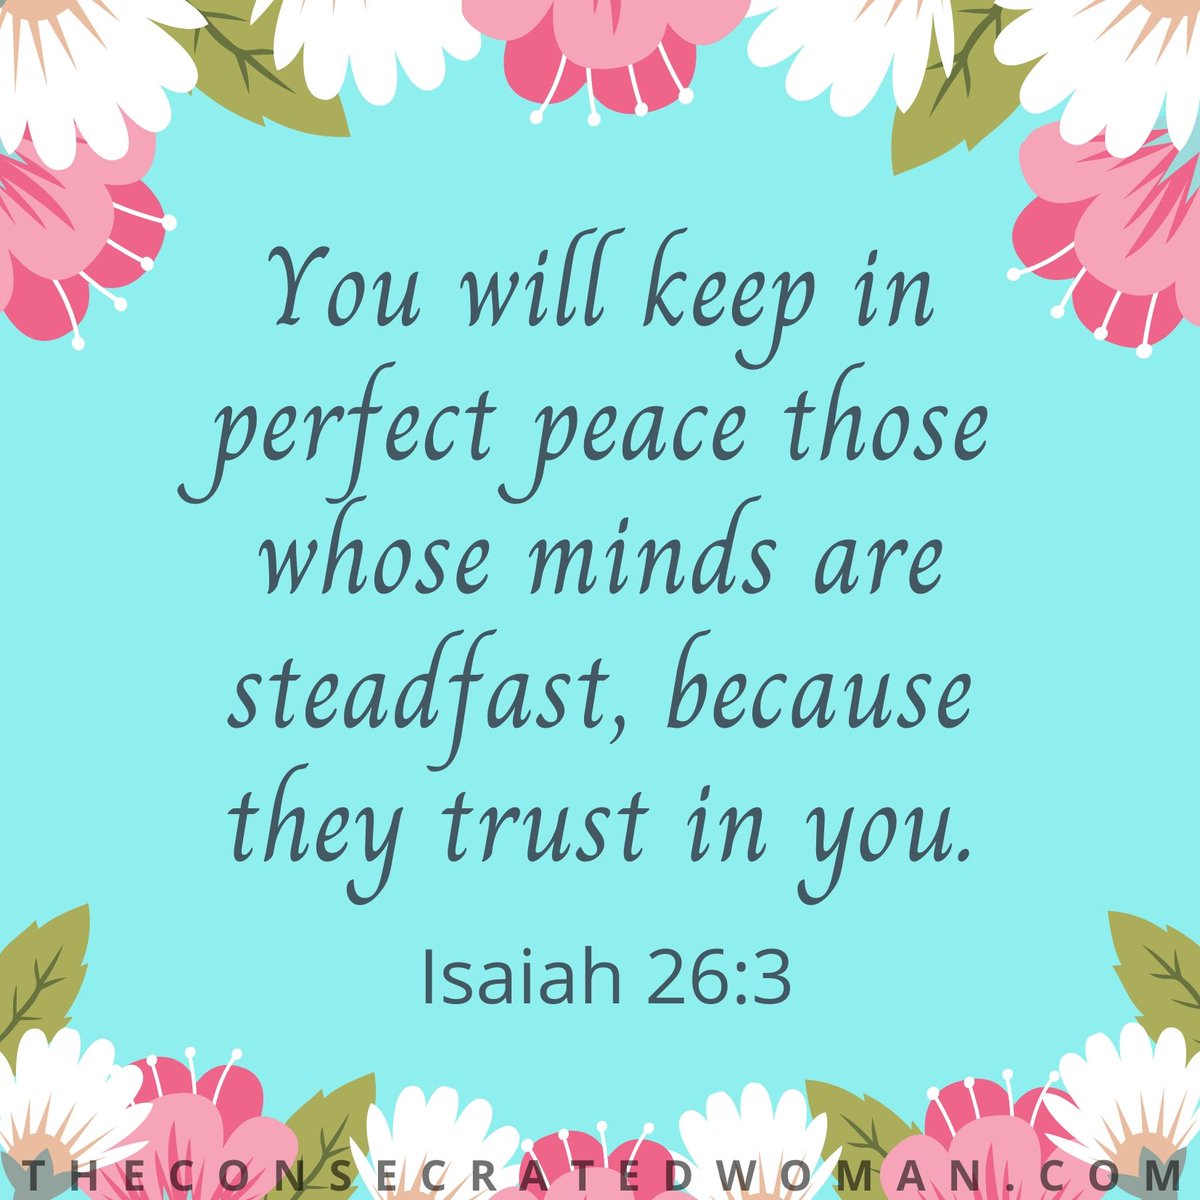 #Isaiah26v3 #perfectpeace #peace #steadfastminds #trustinGod #unshakeablefaith #faith #believe